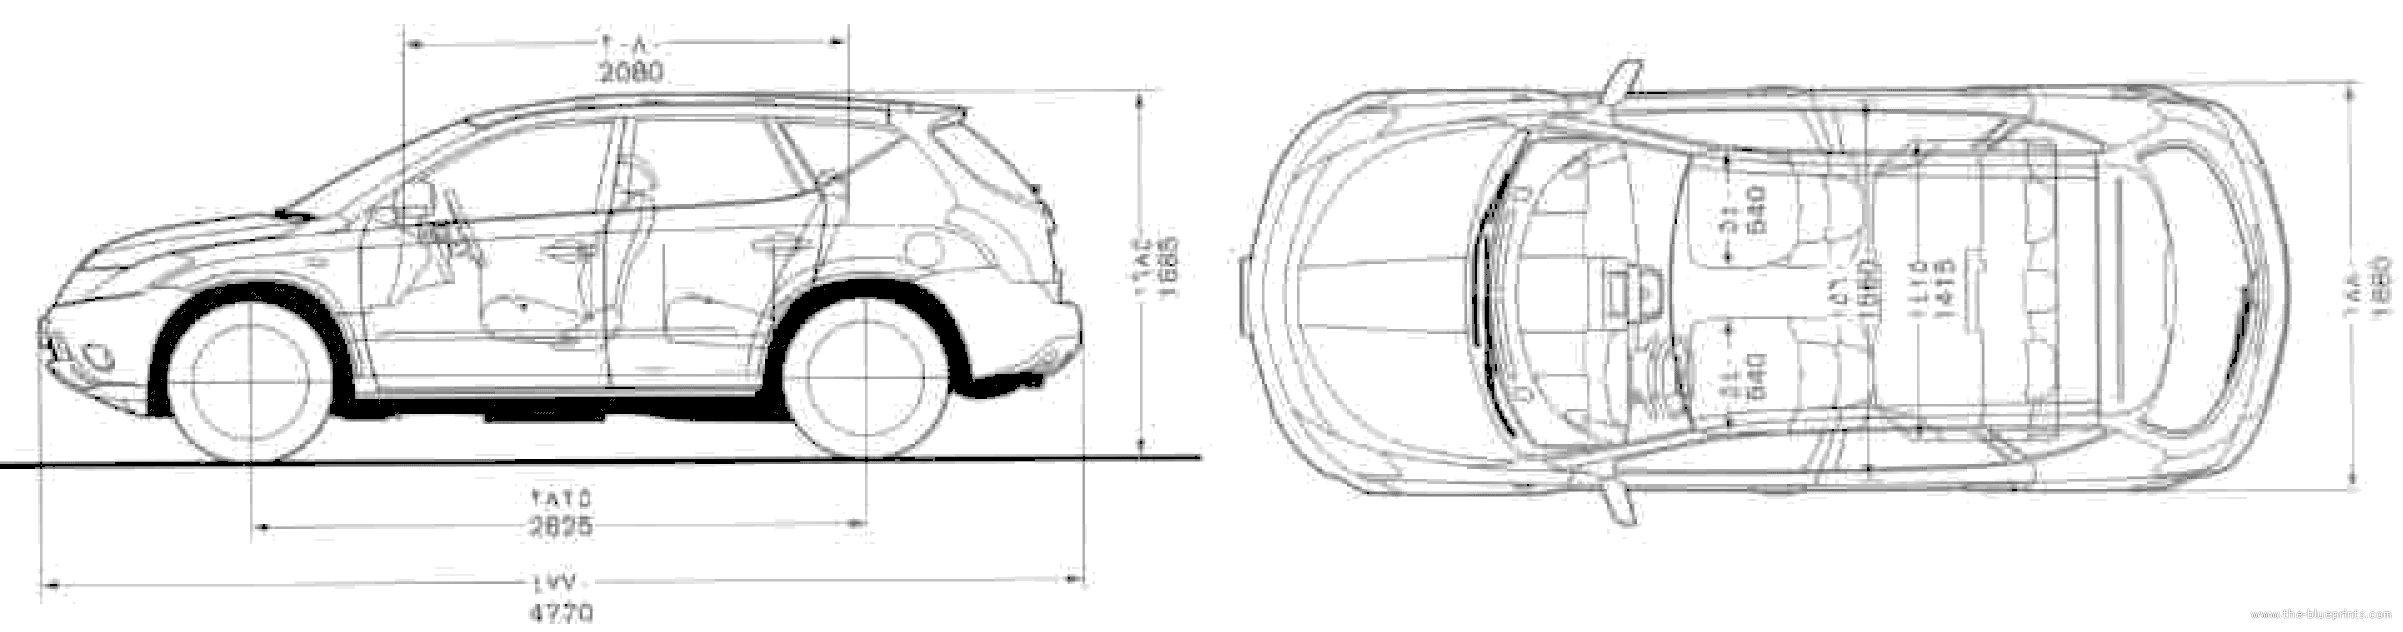 Nissan murano interior dimensions